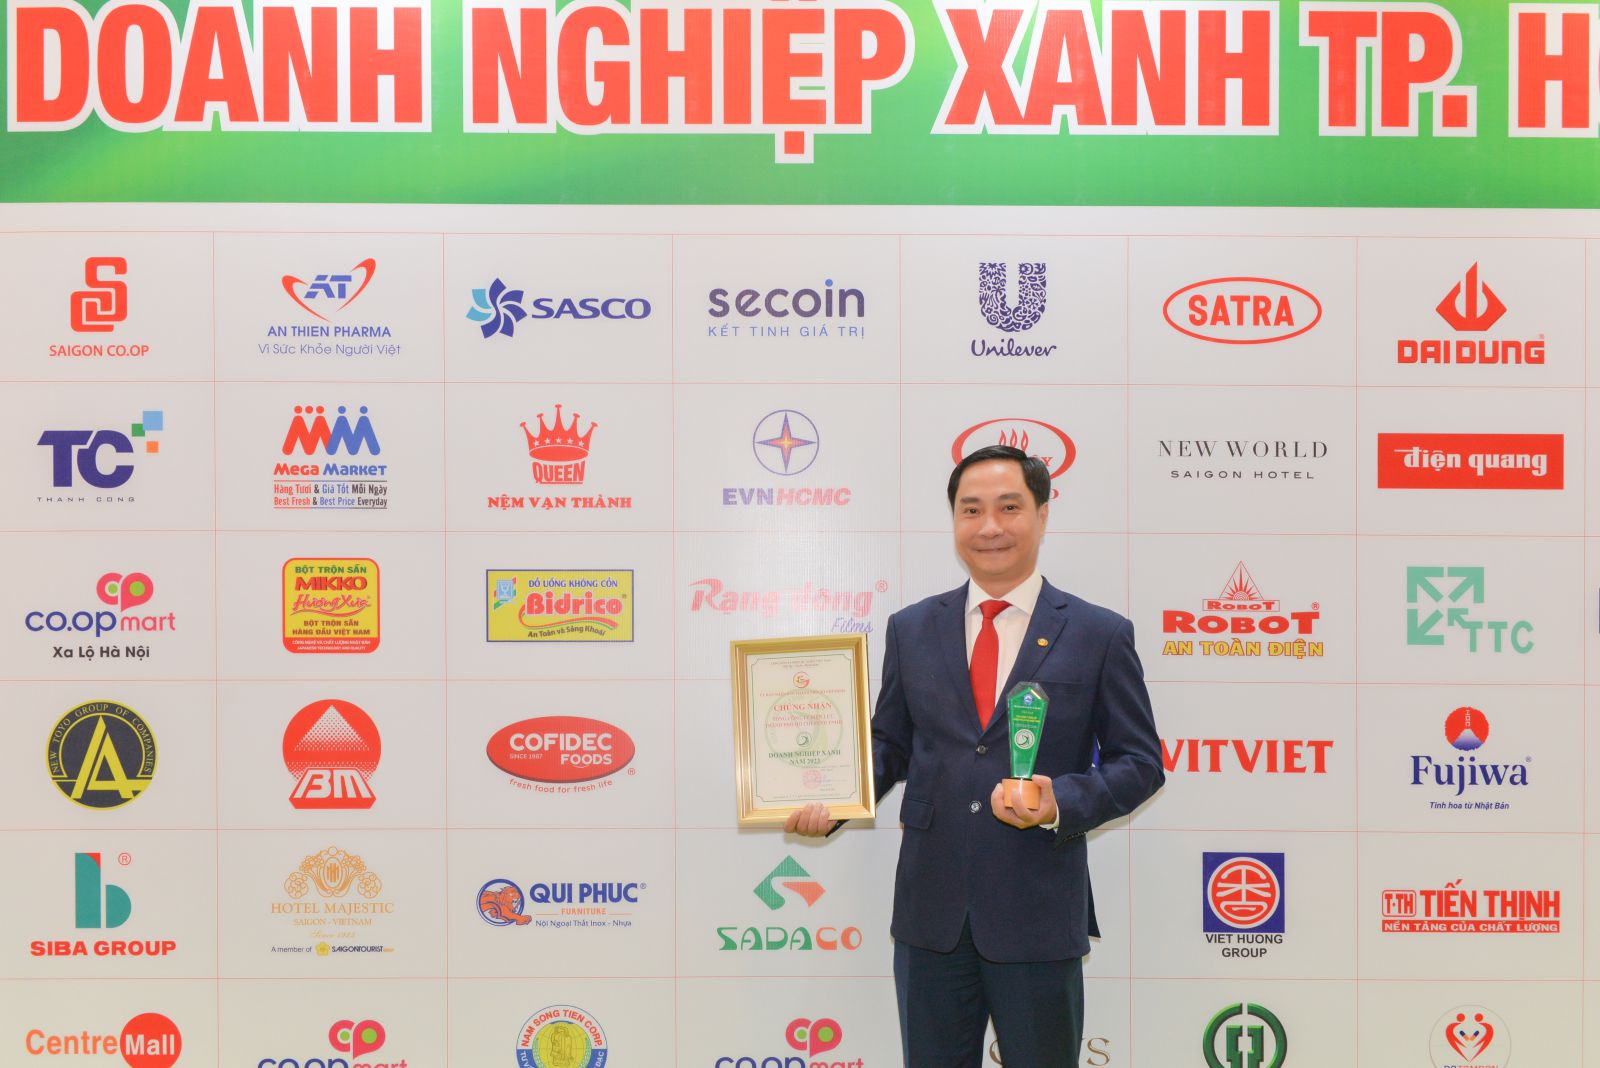 Ông Nguyễn Thanh Nhã - Phó Tổng Giám đốc EVNHCMC, người đại diện Tổng công ty nhận giải thưởng tại buổi Lễ trao giải.